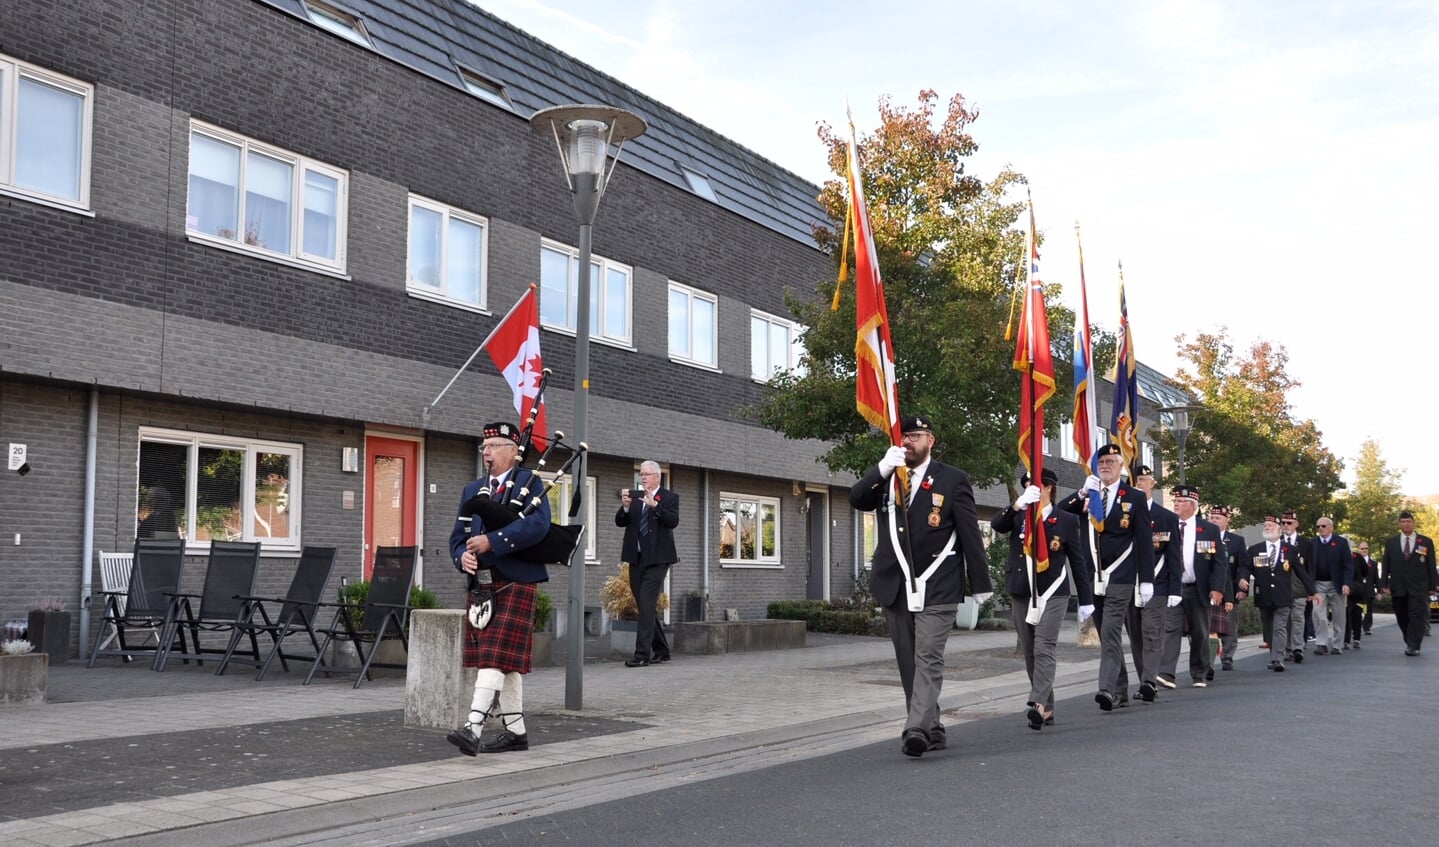 Vier leden van de Royal Canadian Legion maakten met hun vaandels de ceremonie extra plechtig. Foto: PR